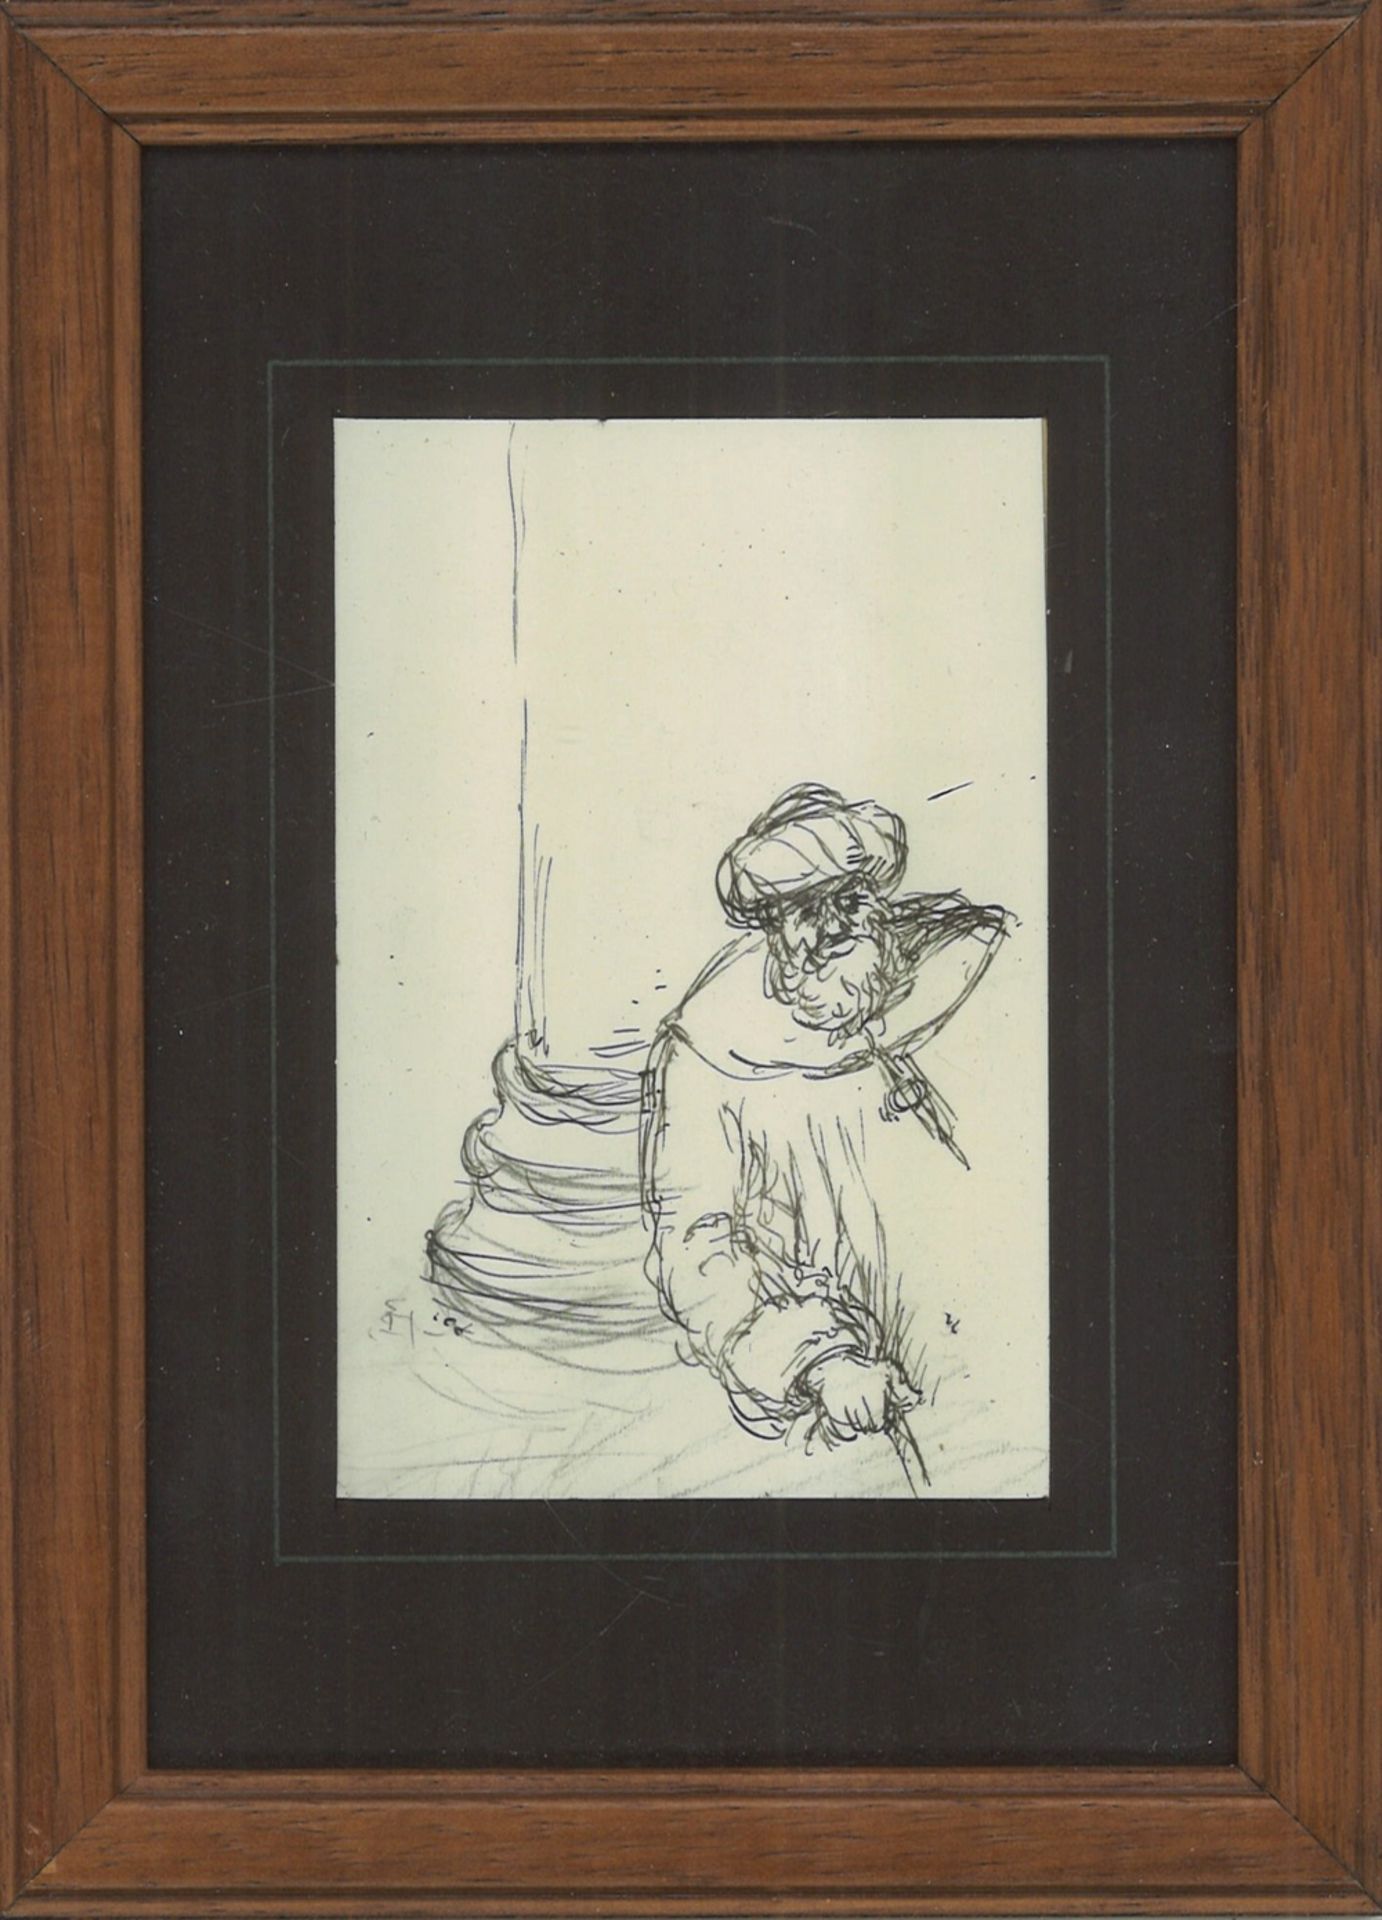 Zeichnung "Mann" von Jakob Baqué, hinter Glas gerahmt. Gesamtmaße: Höhe ca. 16,5 cm, Breite ca. 12